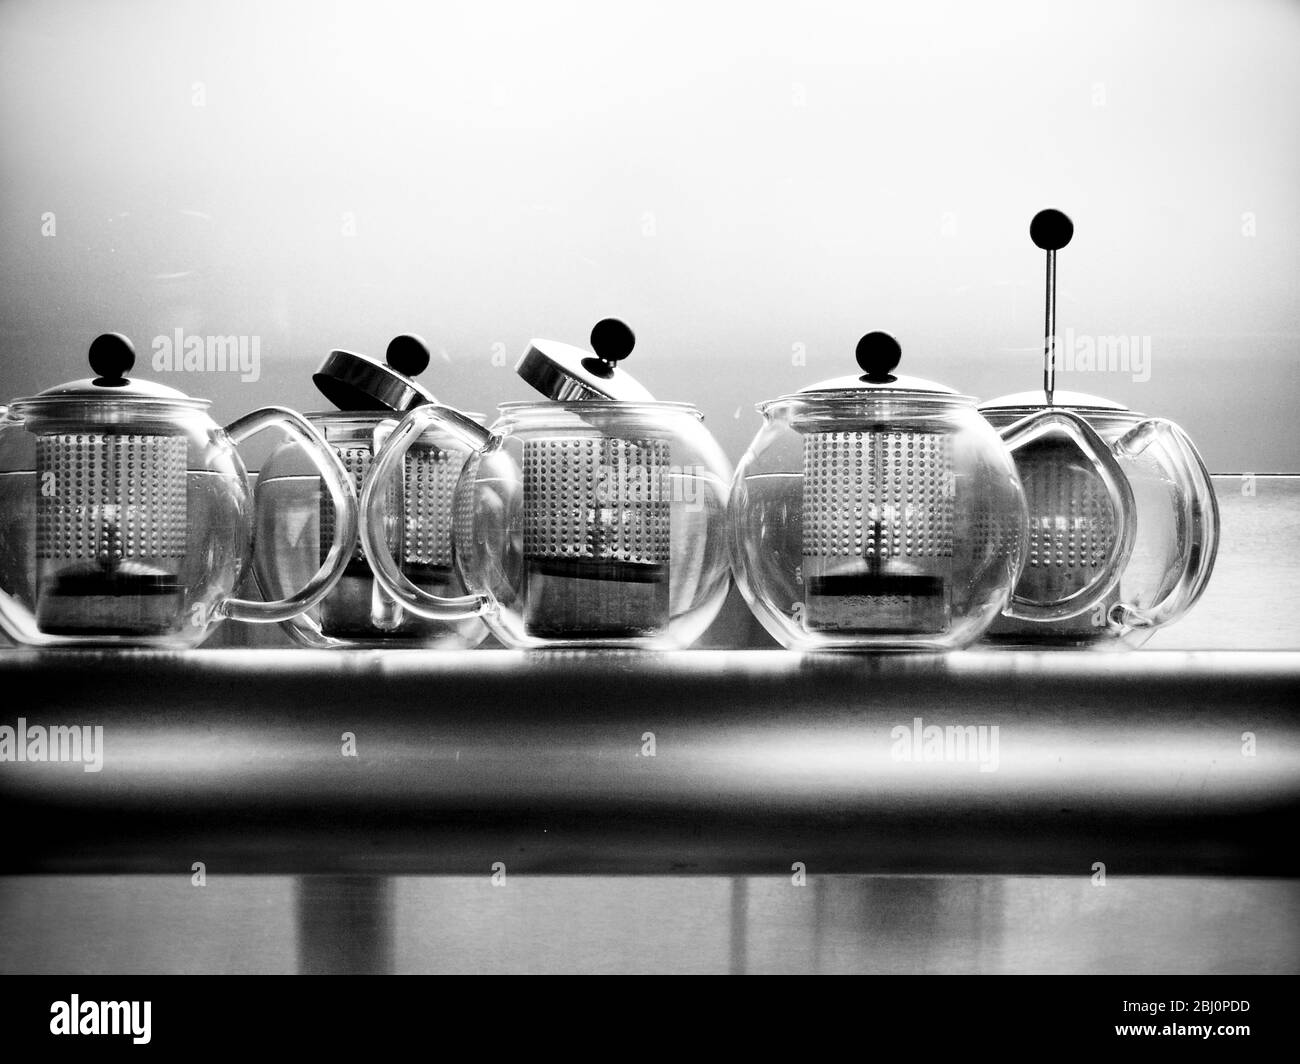 Teekannen aus Glas auf Metallregal im Restaurant - Stockfoto